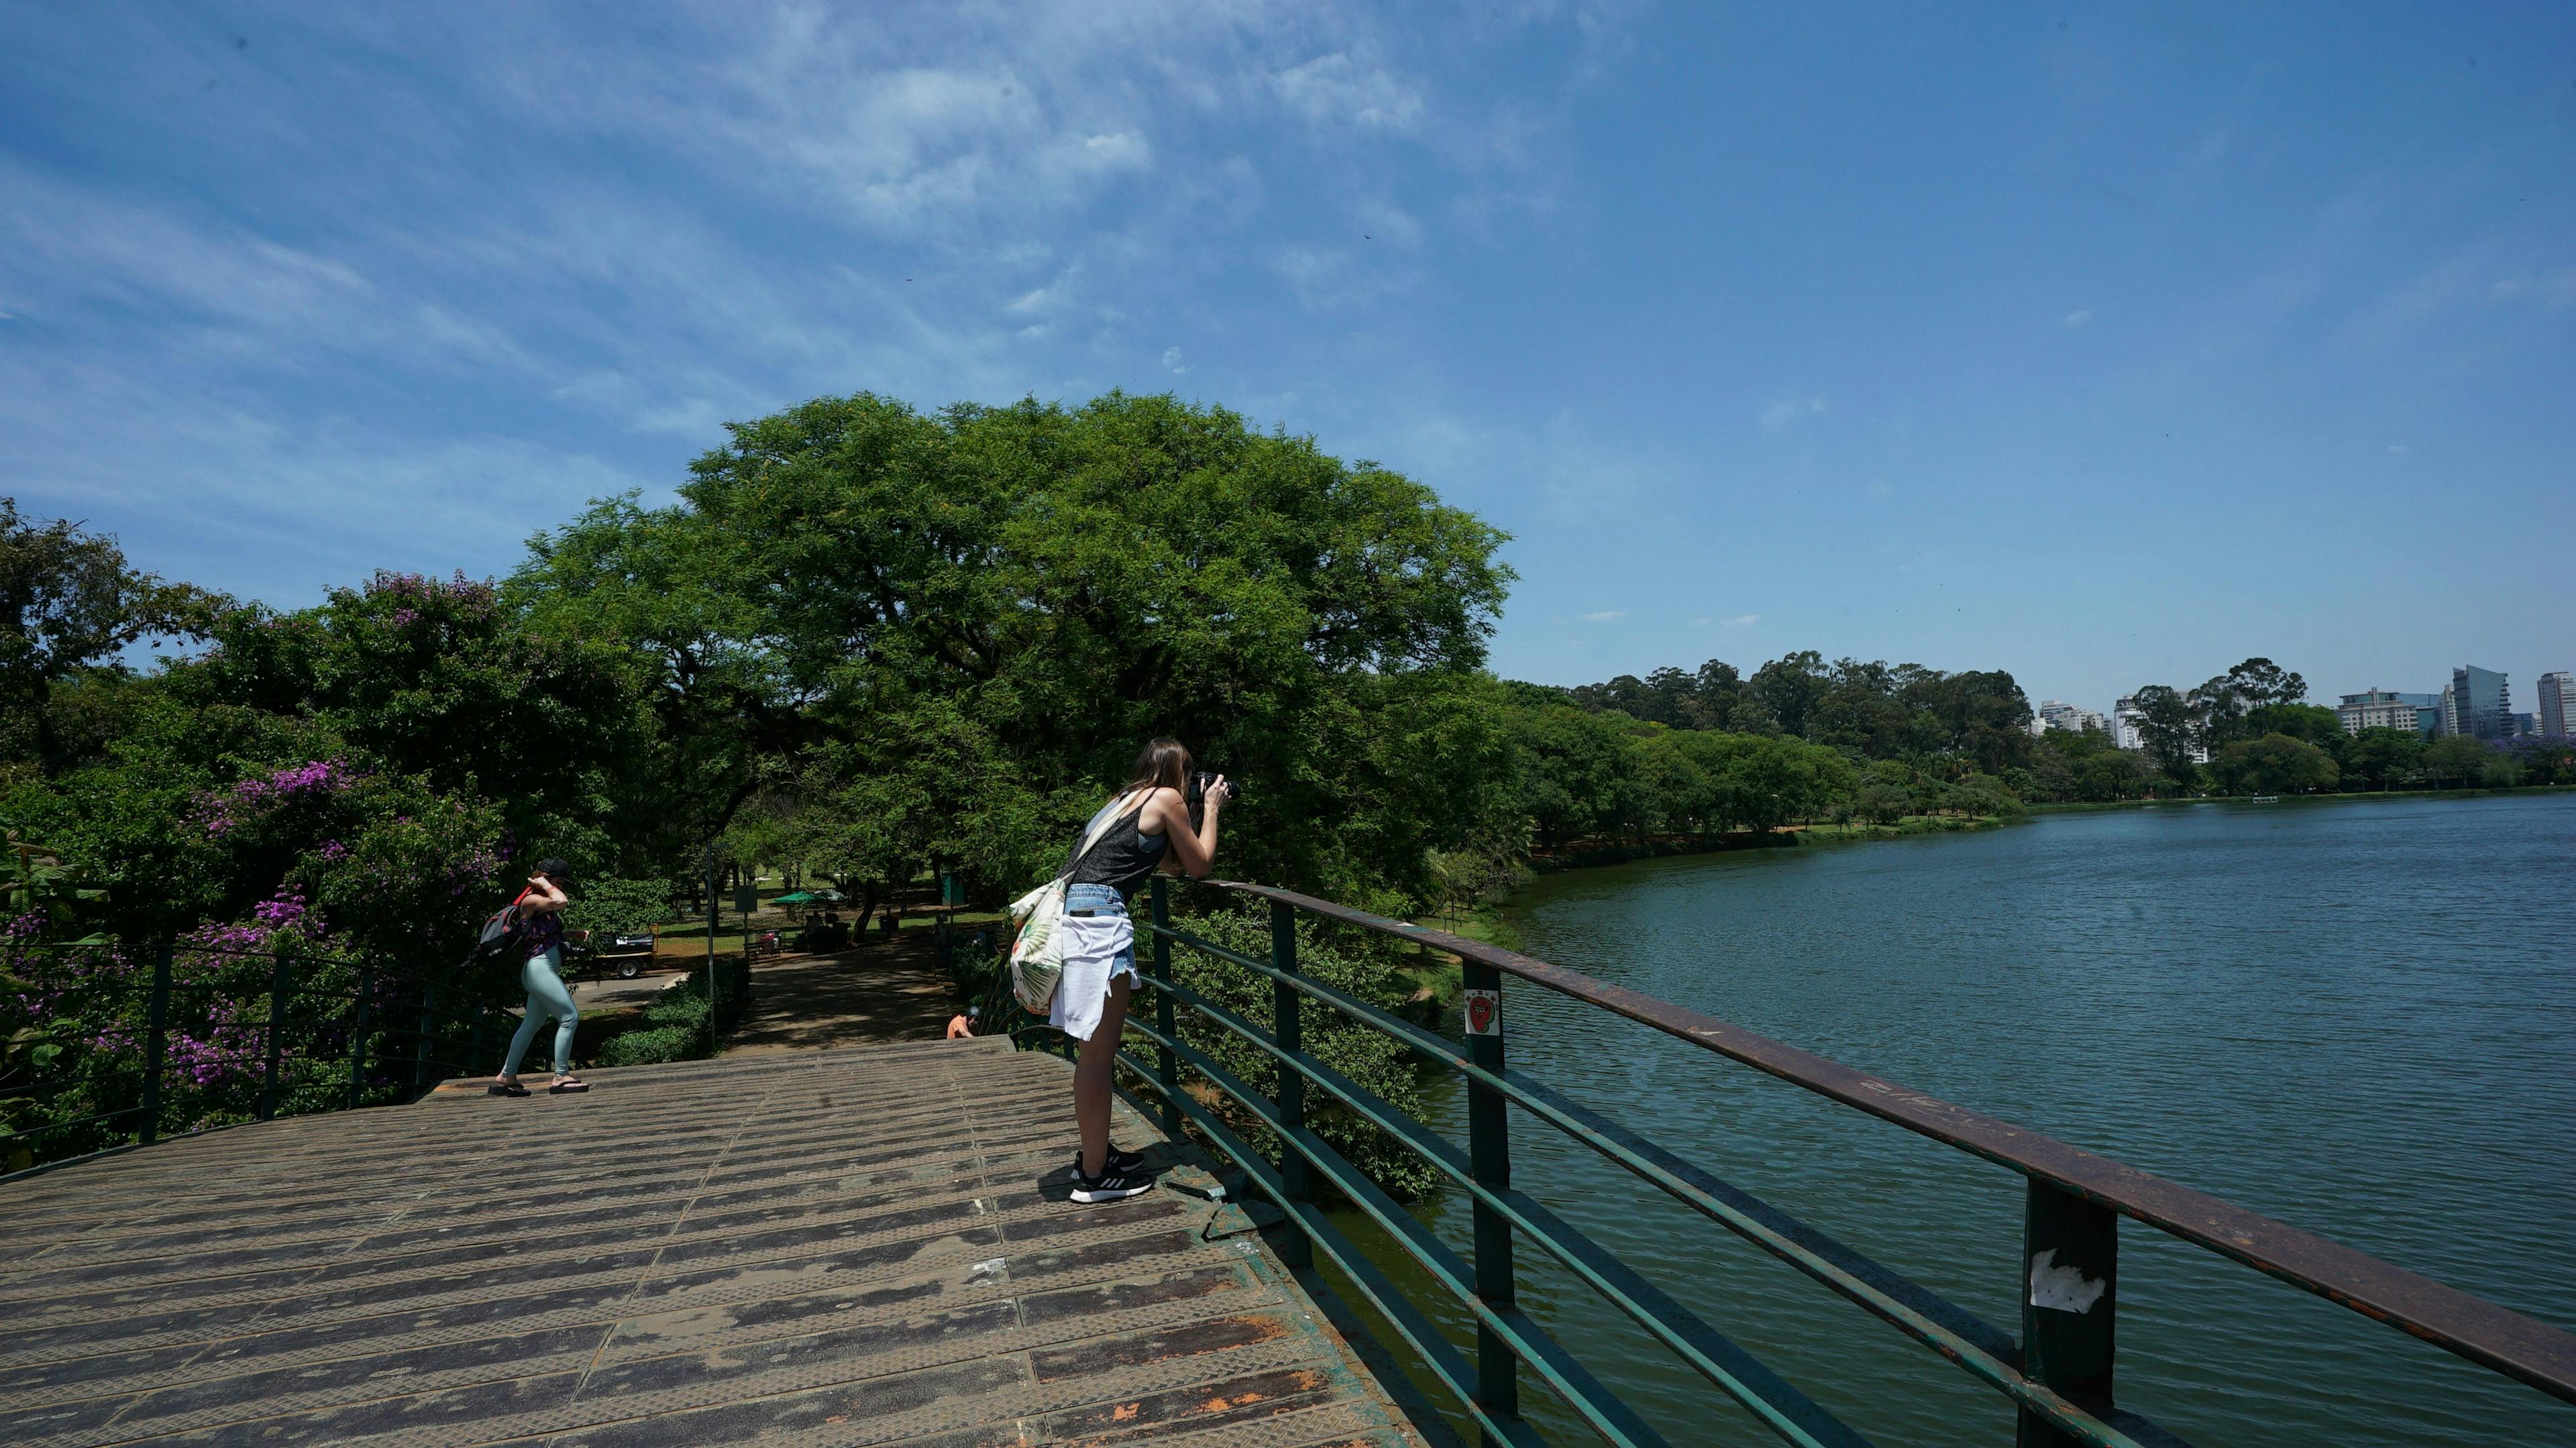 Urbia anuncia agenda semanal com festival no Parque Ibirapuera, aula de spinning no Planetário e programação gratuita do Outubro Rosa no Horto Florestal